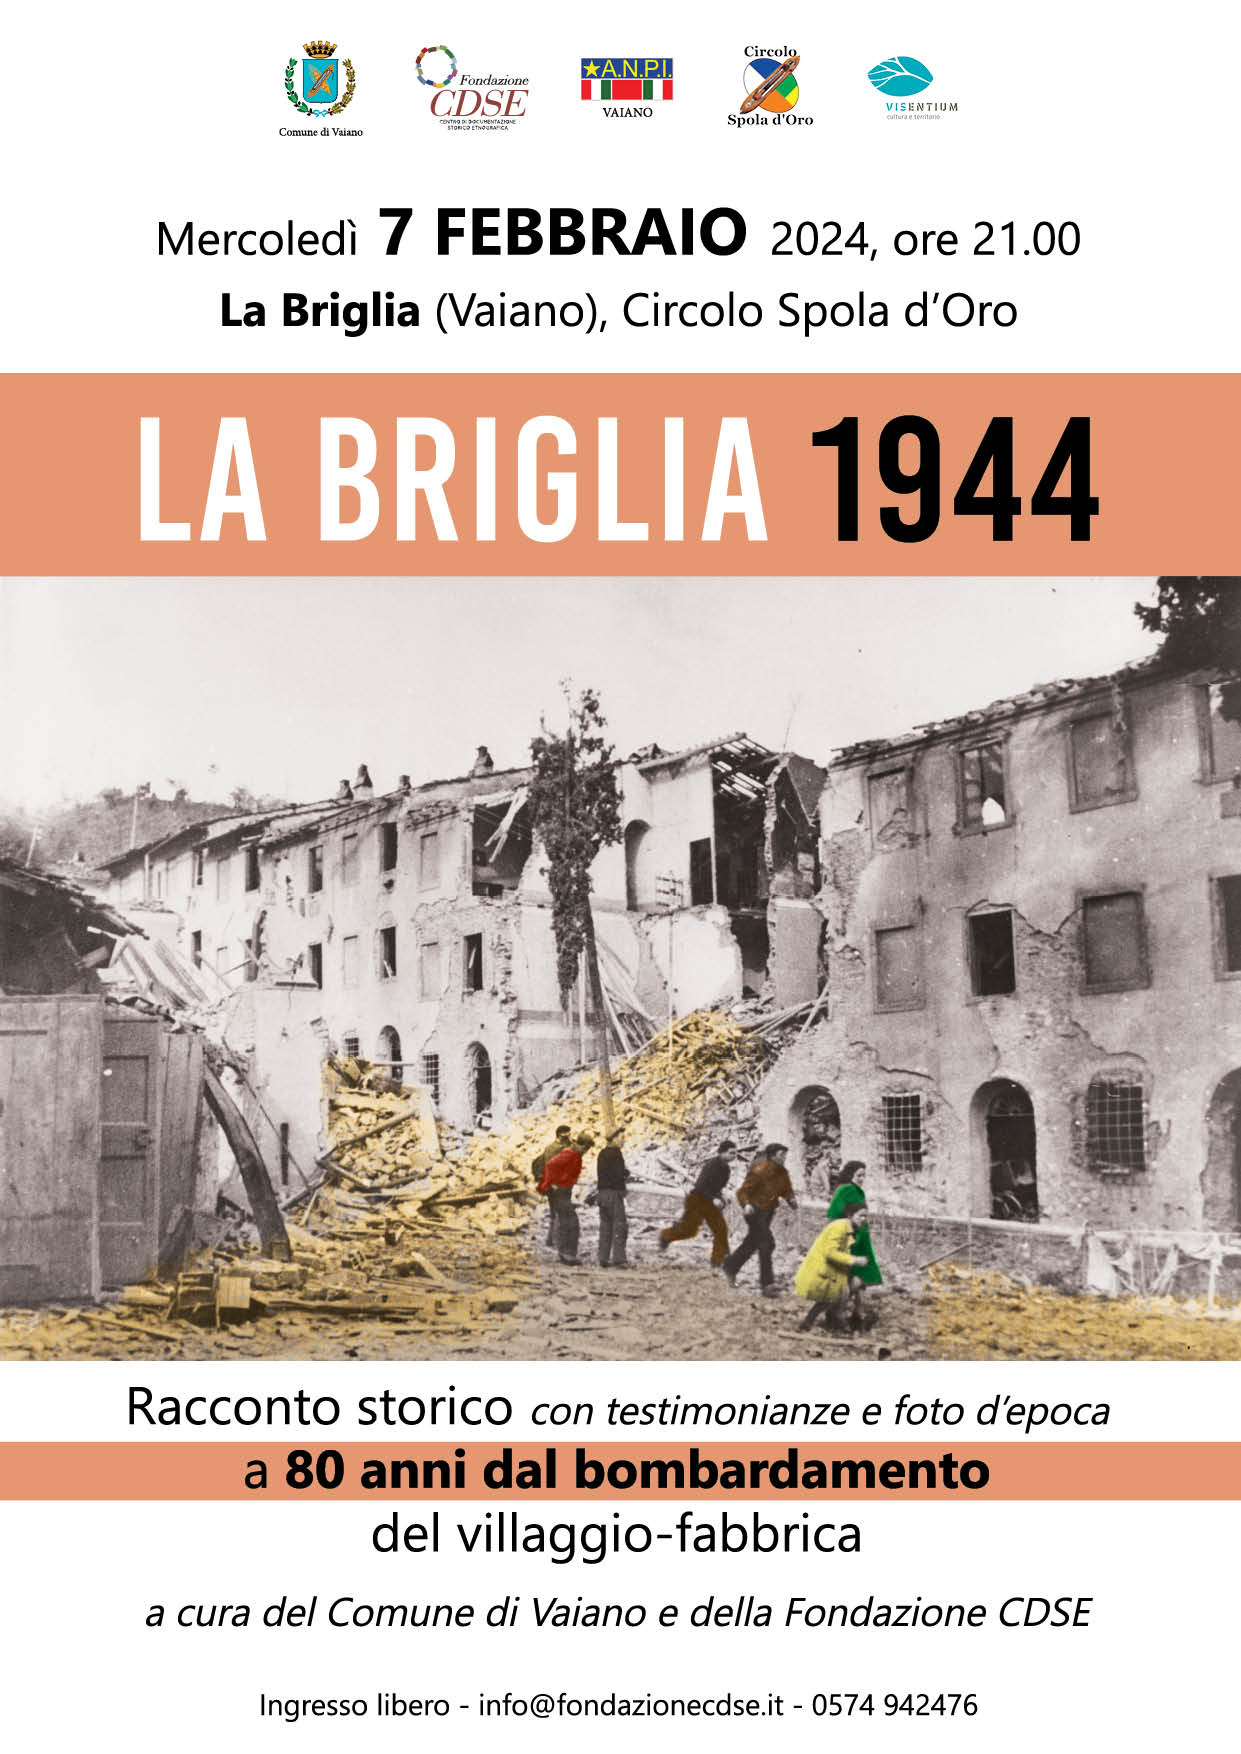 <strong>La Briglia 1944, il racconto storico a 80 anni</strong> <strong>dal bombardamento del villaggio-fabbrica</strong>